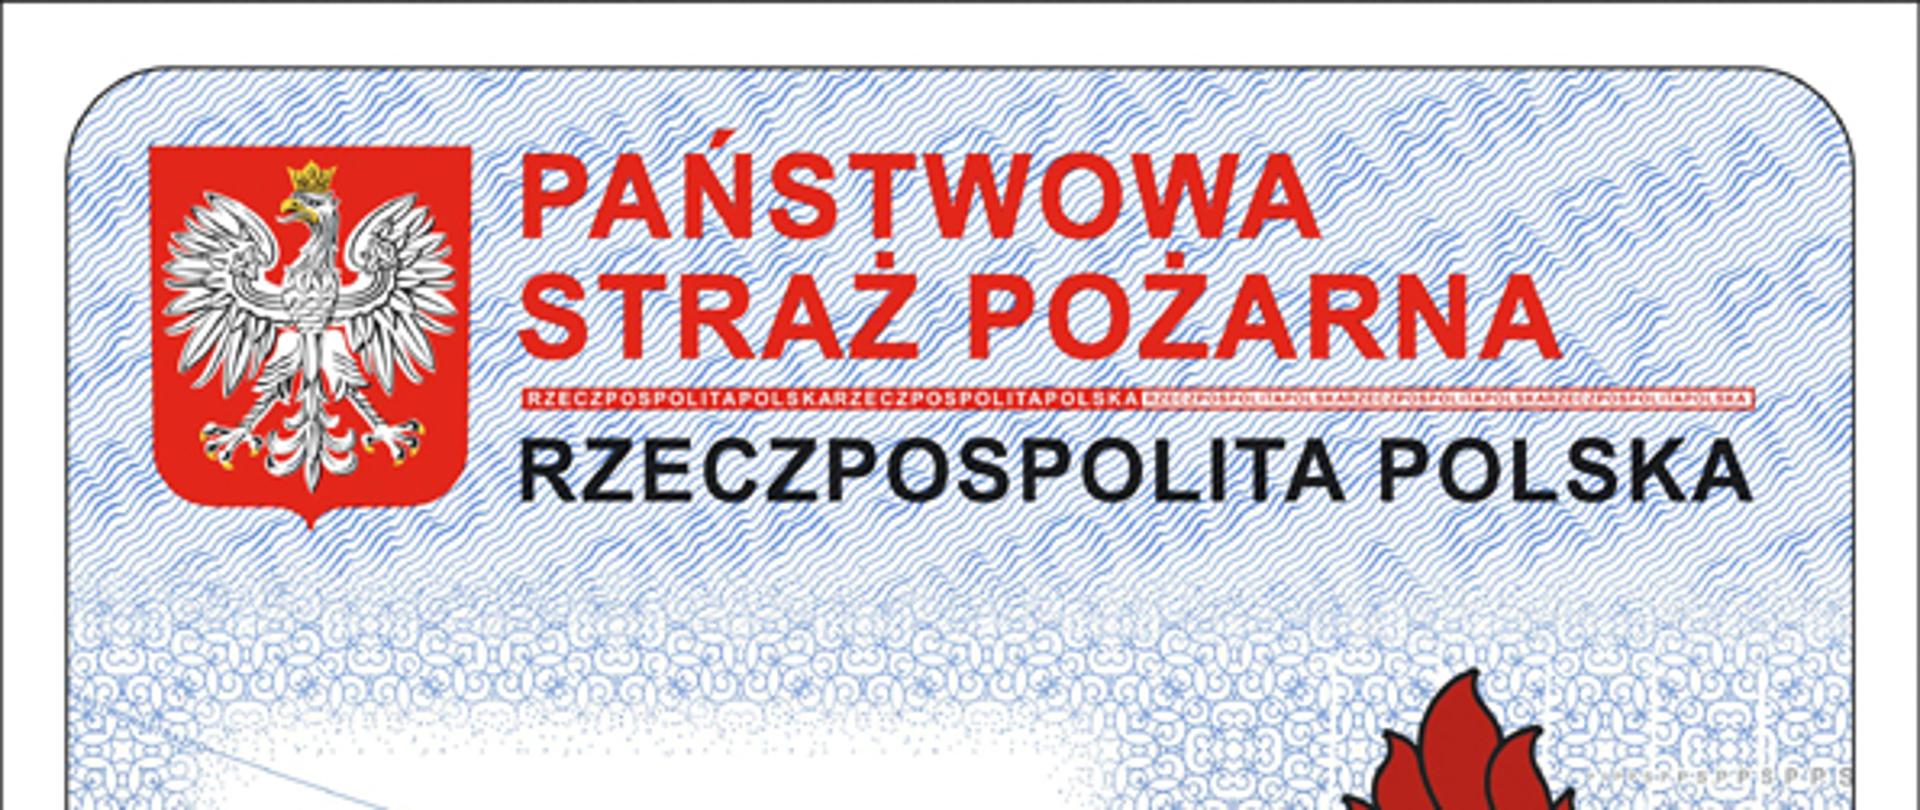 Grafika przedstawiająca nowy projekt legitymacji służbowej z godłem Polski oraz logo Państwowej Straży Pożarnej.